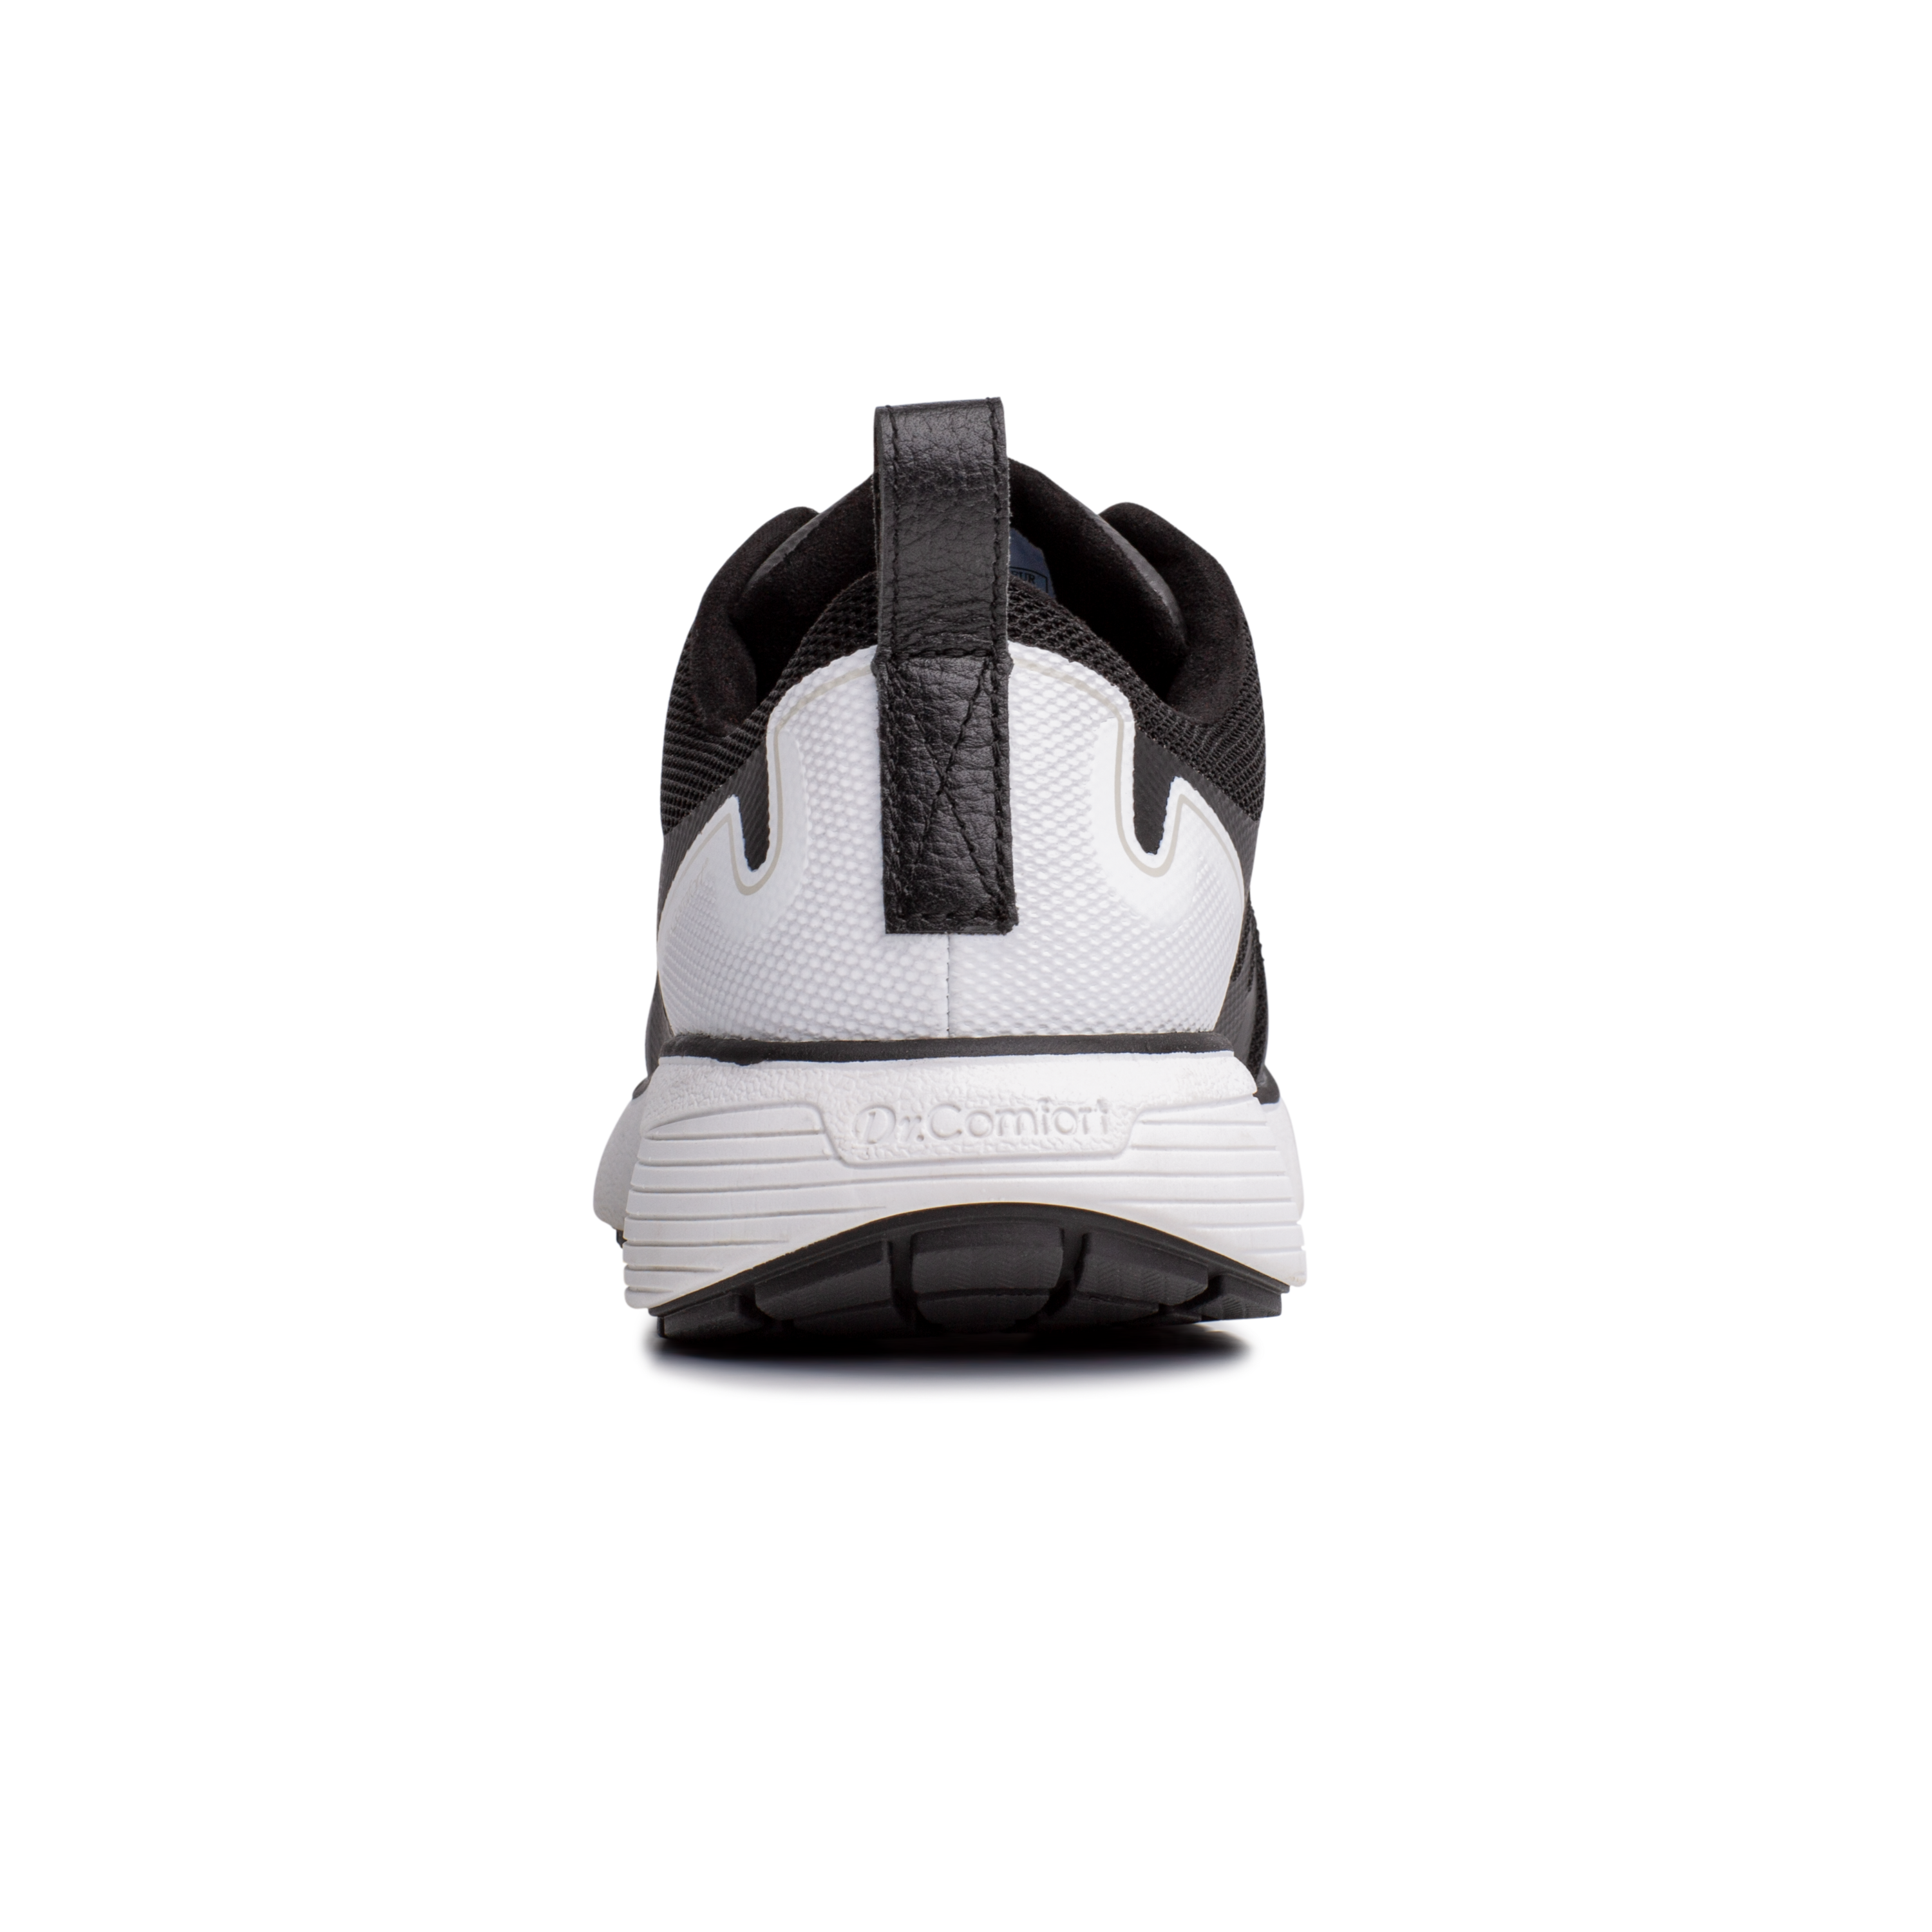 Zusatzbild DR. COMFORT® Grace schwarz, hinten, Orthopädische Schuhe, leichter Aktivschuh mit stabilisierender und dämpfender Laufsohlenkonstruktion für einen sicheren Gang